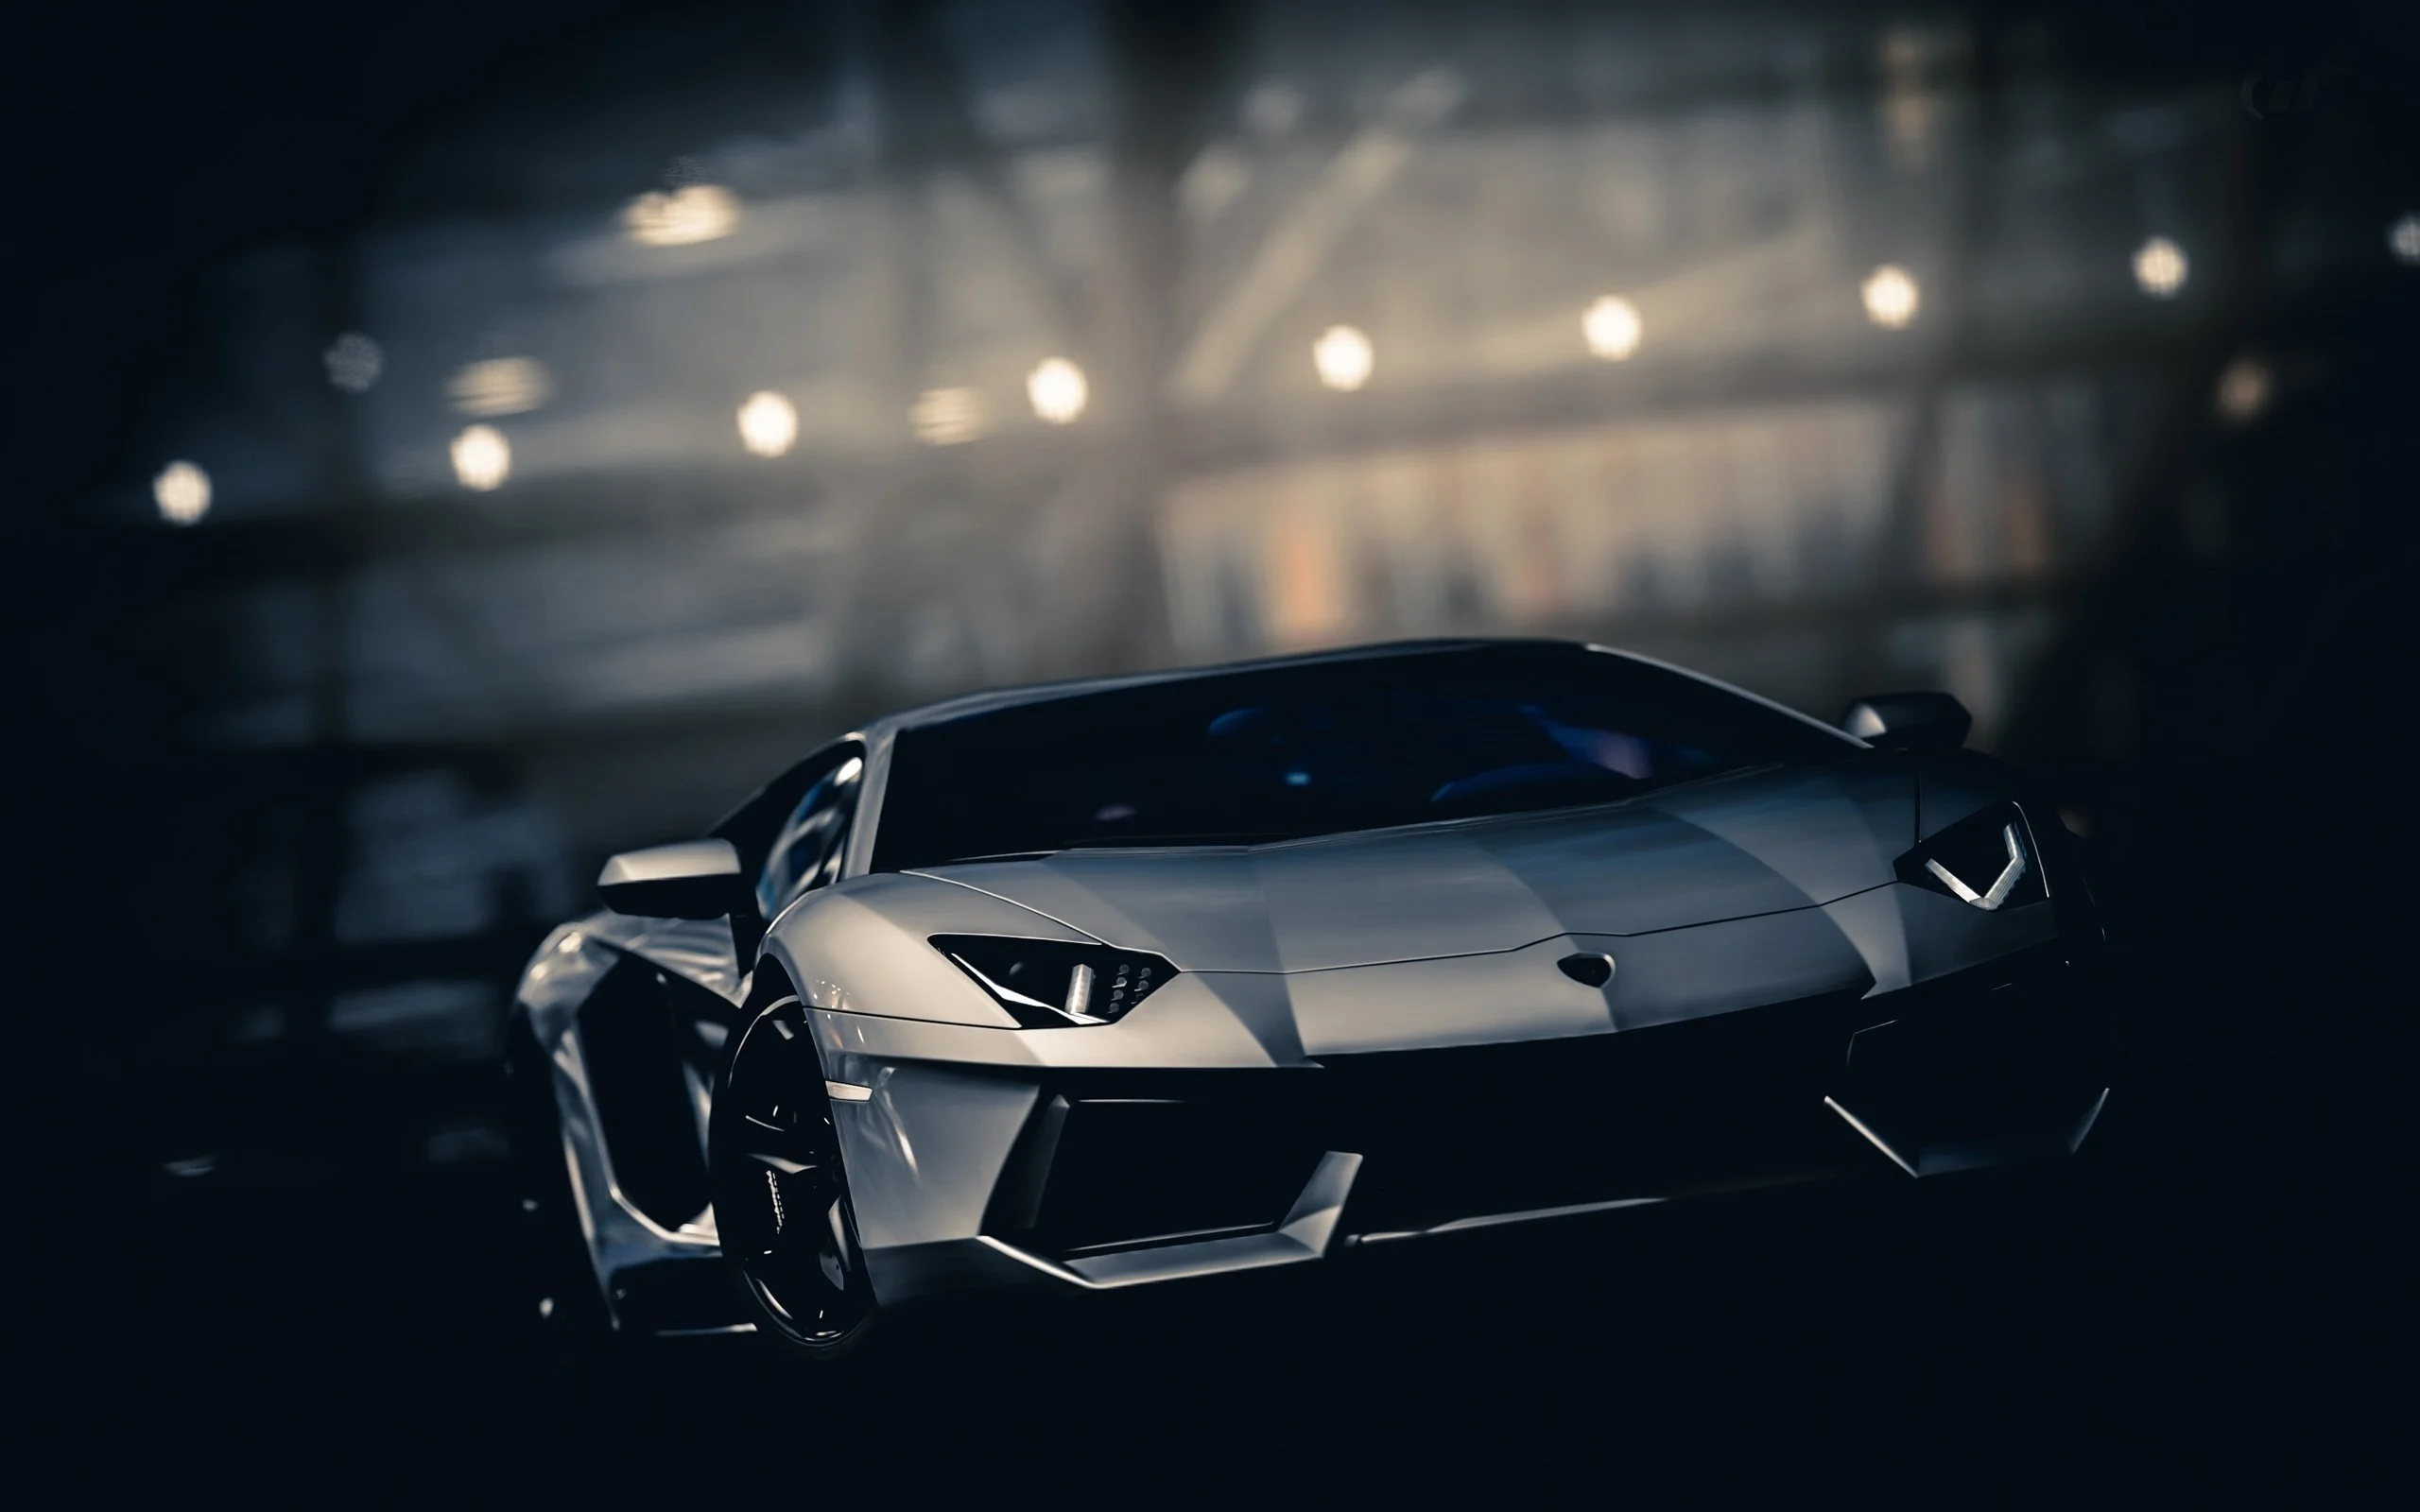 Thương hiệu siêu xe Lamborghini nổi tiếng trên toàn Thế giới bởi sự lịch lãm, đẳng cấp và mang tính biểu tượng đậm chất Italy. Hình ảnh được chia sẻ về Lamborghini sẽ khiến bạn trầm trồ trước thiết kế hoàn hảo cùng khả năng vận hành tối ưu của những siêu xe này. Hãy cùng khám phá những khoảnh khắc tuyệt vời của dòng siêu xe đình đám này ngay hôm nay.